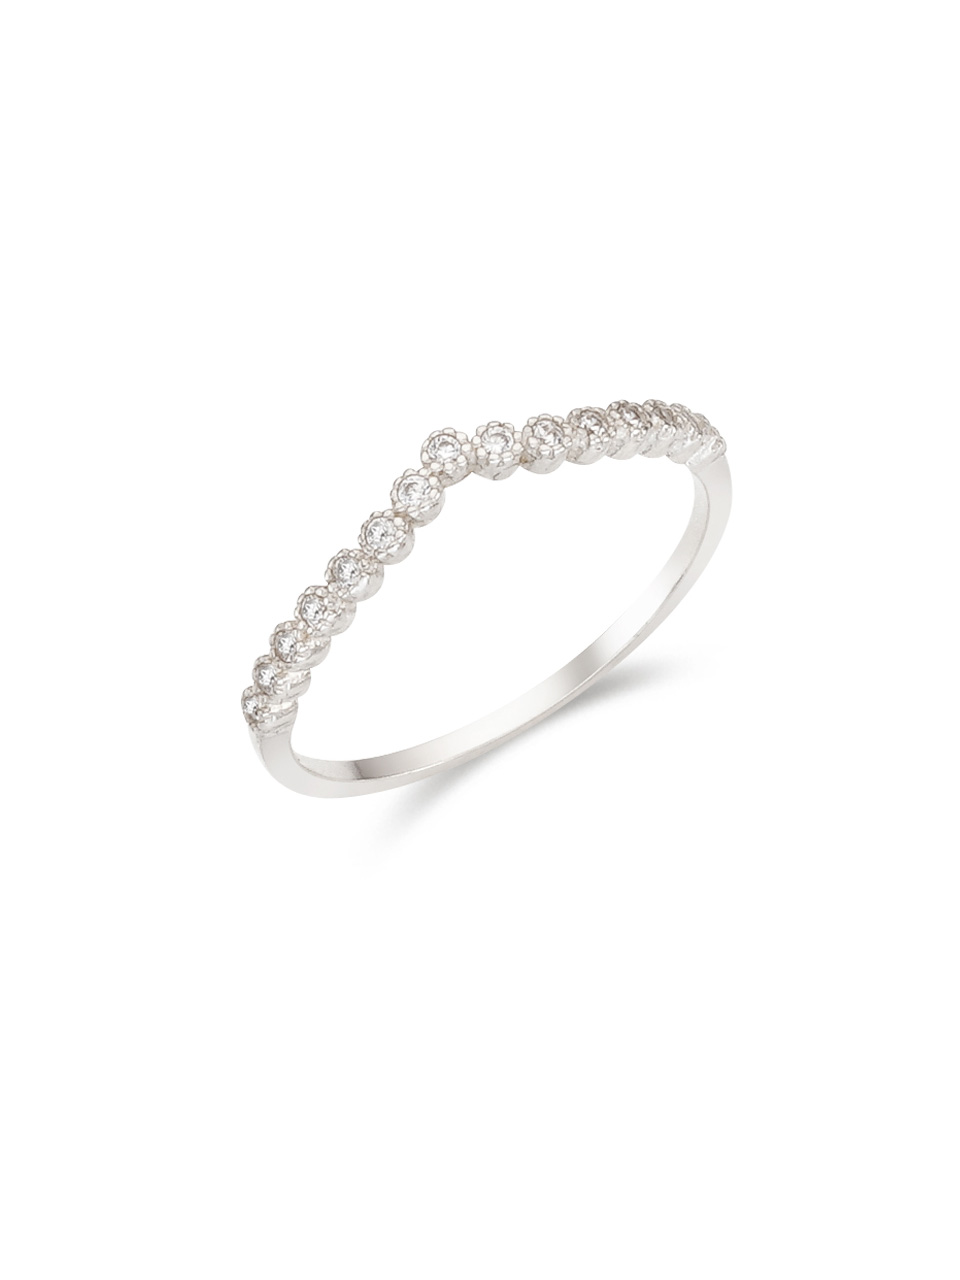 [silver925]Quinn ring